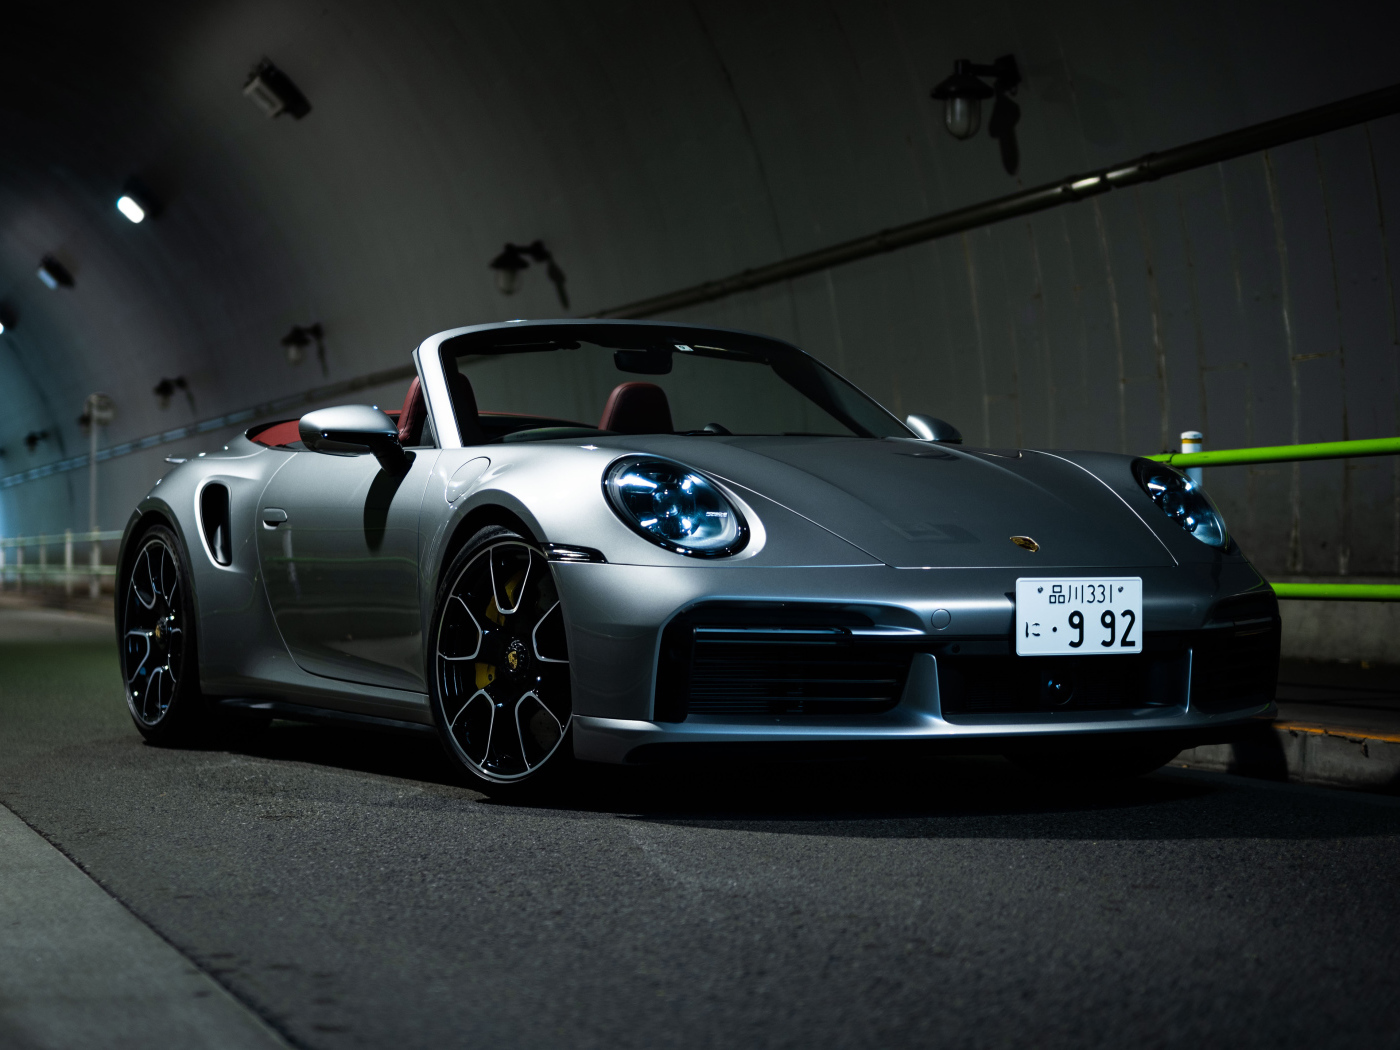 Серебристый Porsche 911 Turbo S Cabriolet 2021 года в тоннеле